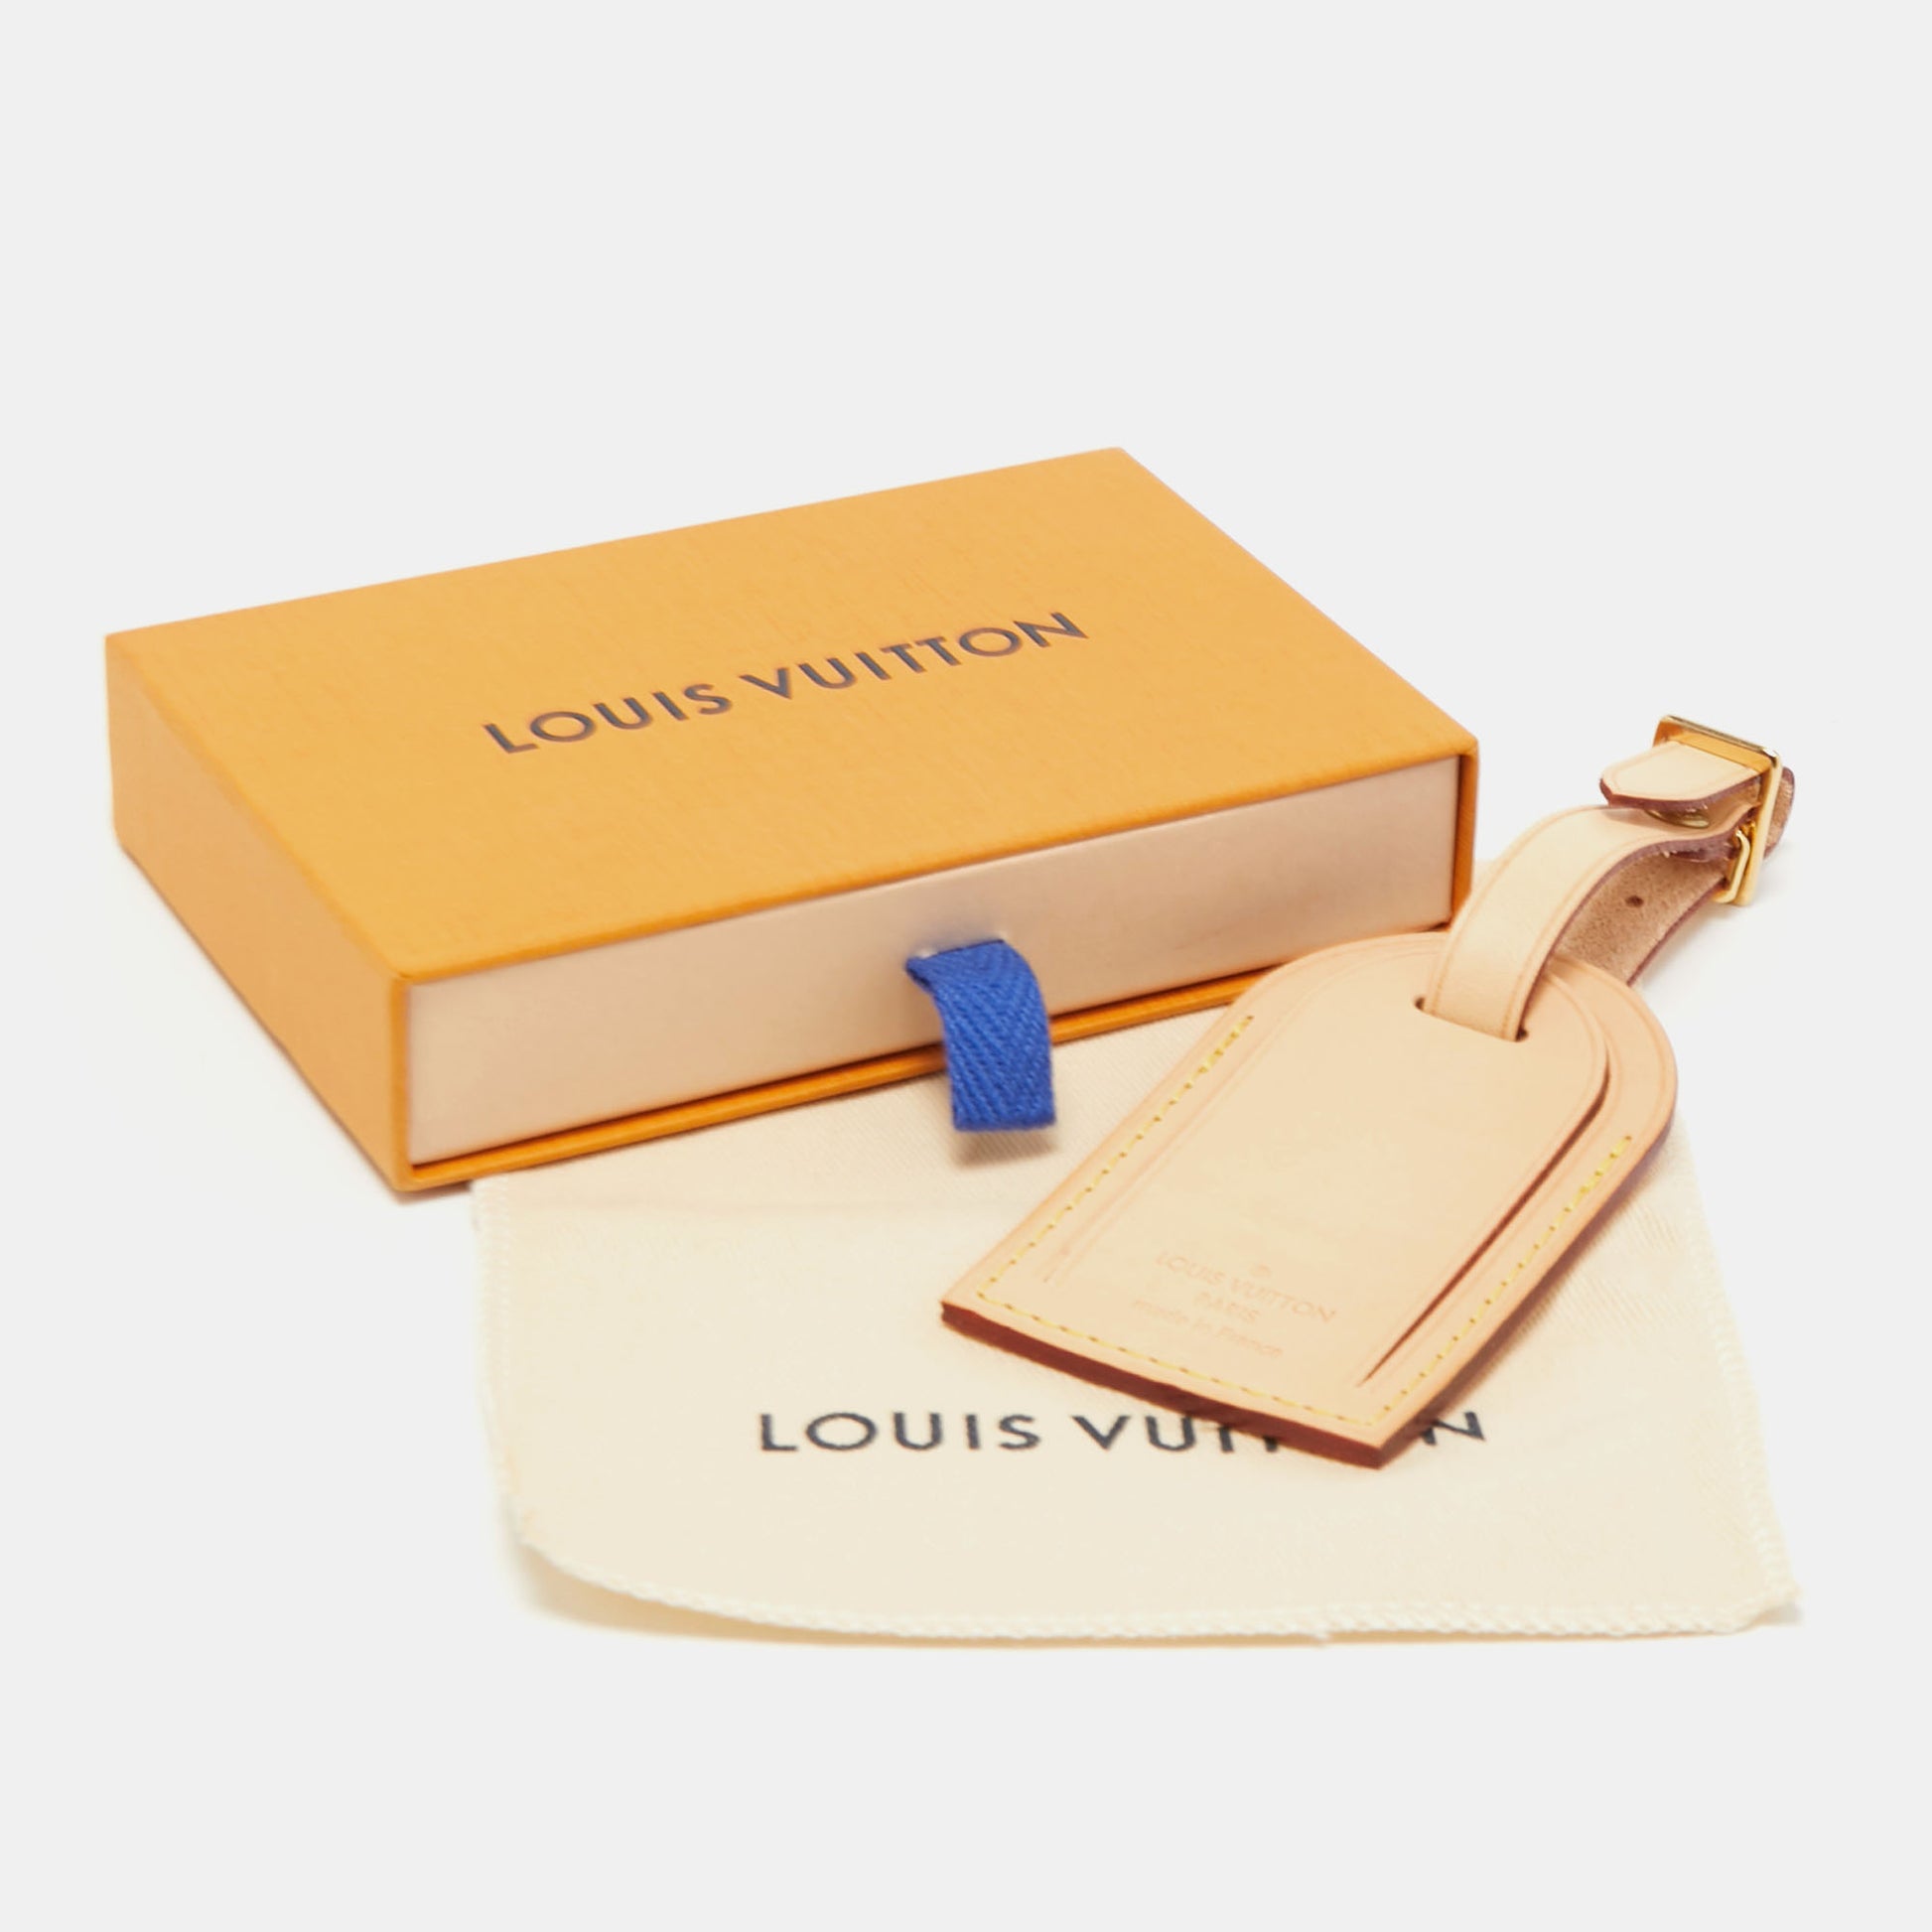 Louis Vuitton Vachetta Leather Luggage Name Tag - ShopStyle Women's Fashion